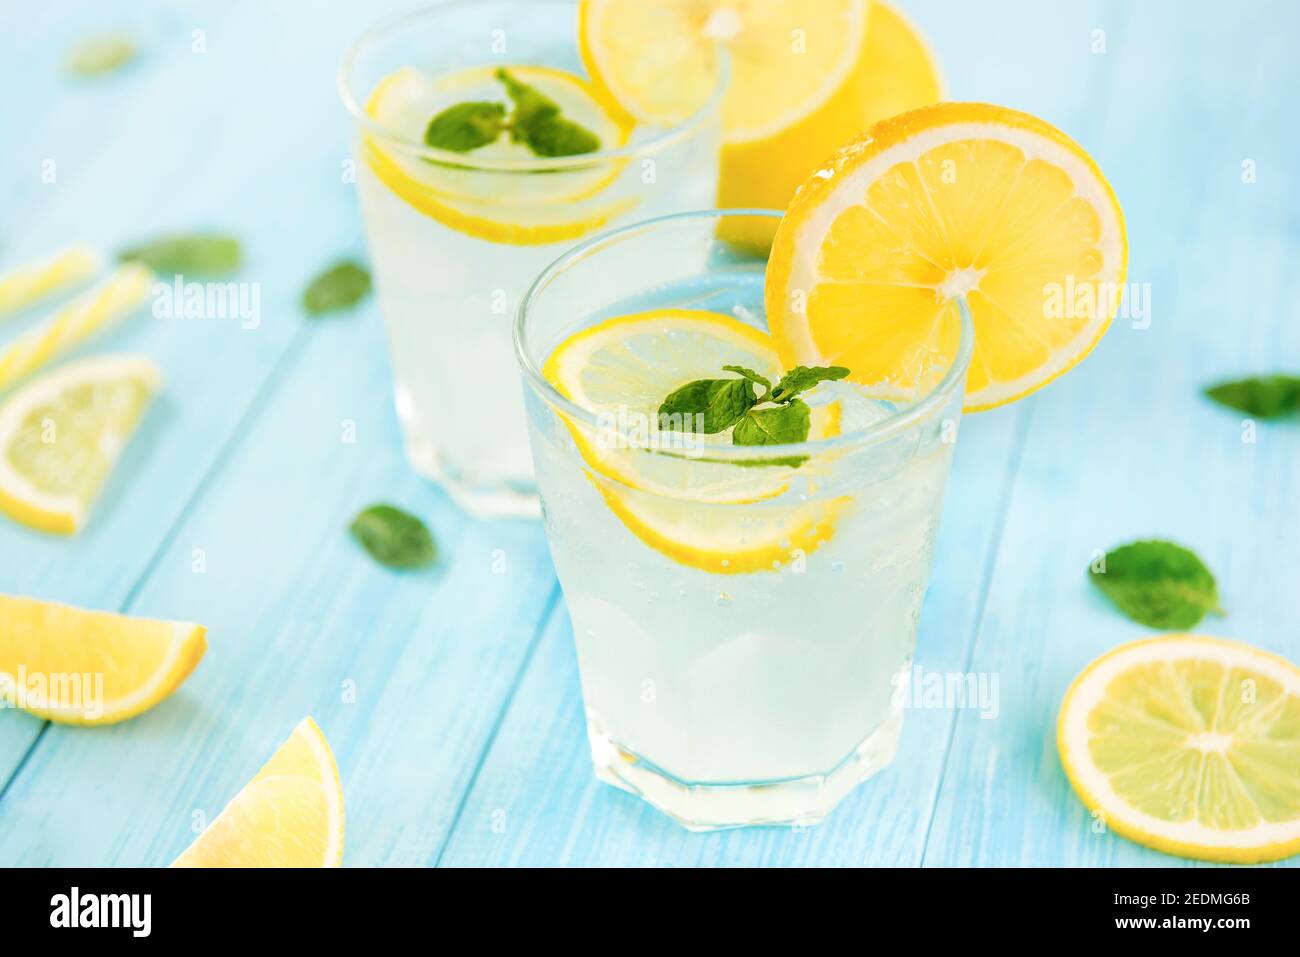 Boissons rafraîchissantes pour l'été, jus de limonade froid et aigre-doux avec glaçons dans les verres garnis de tranches de citrons frais Banque D'Images